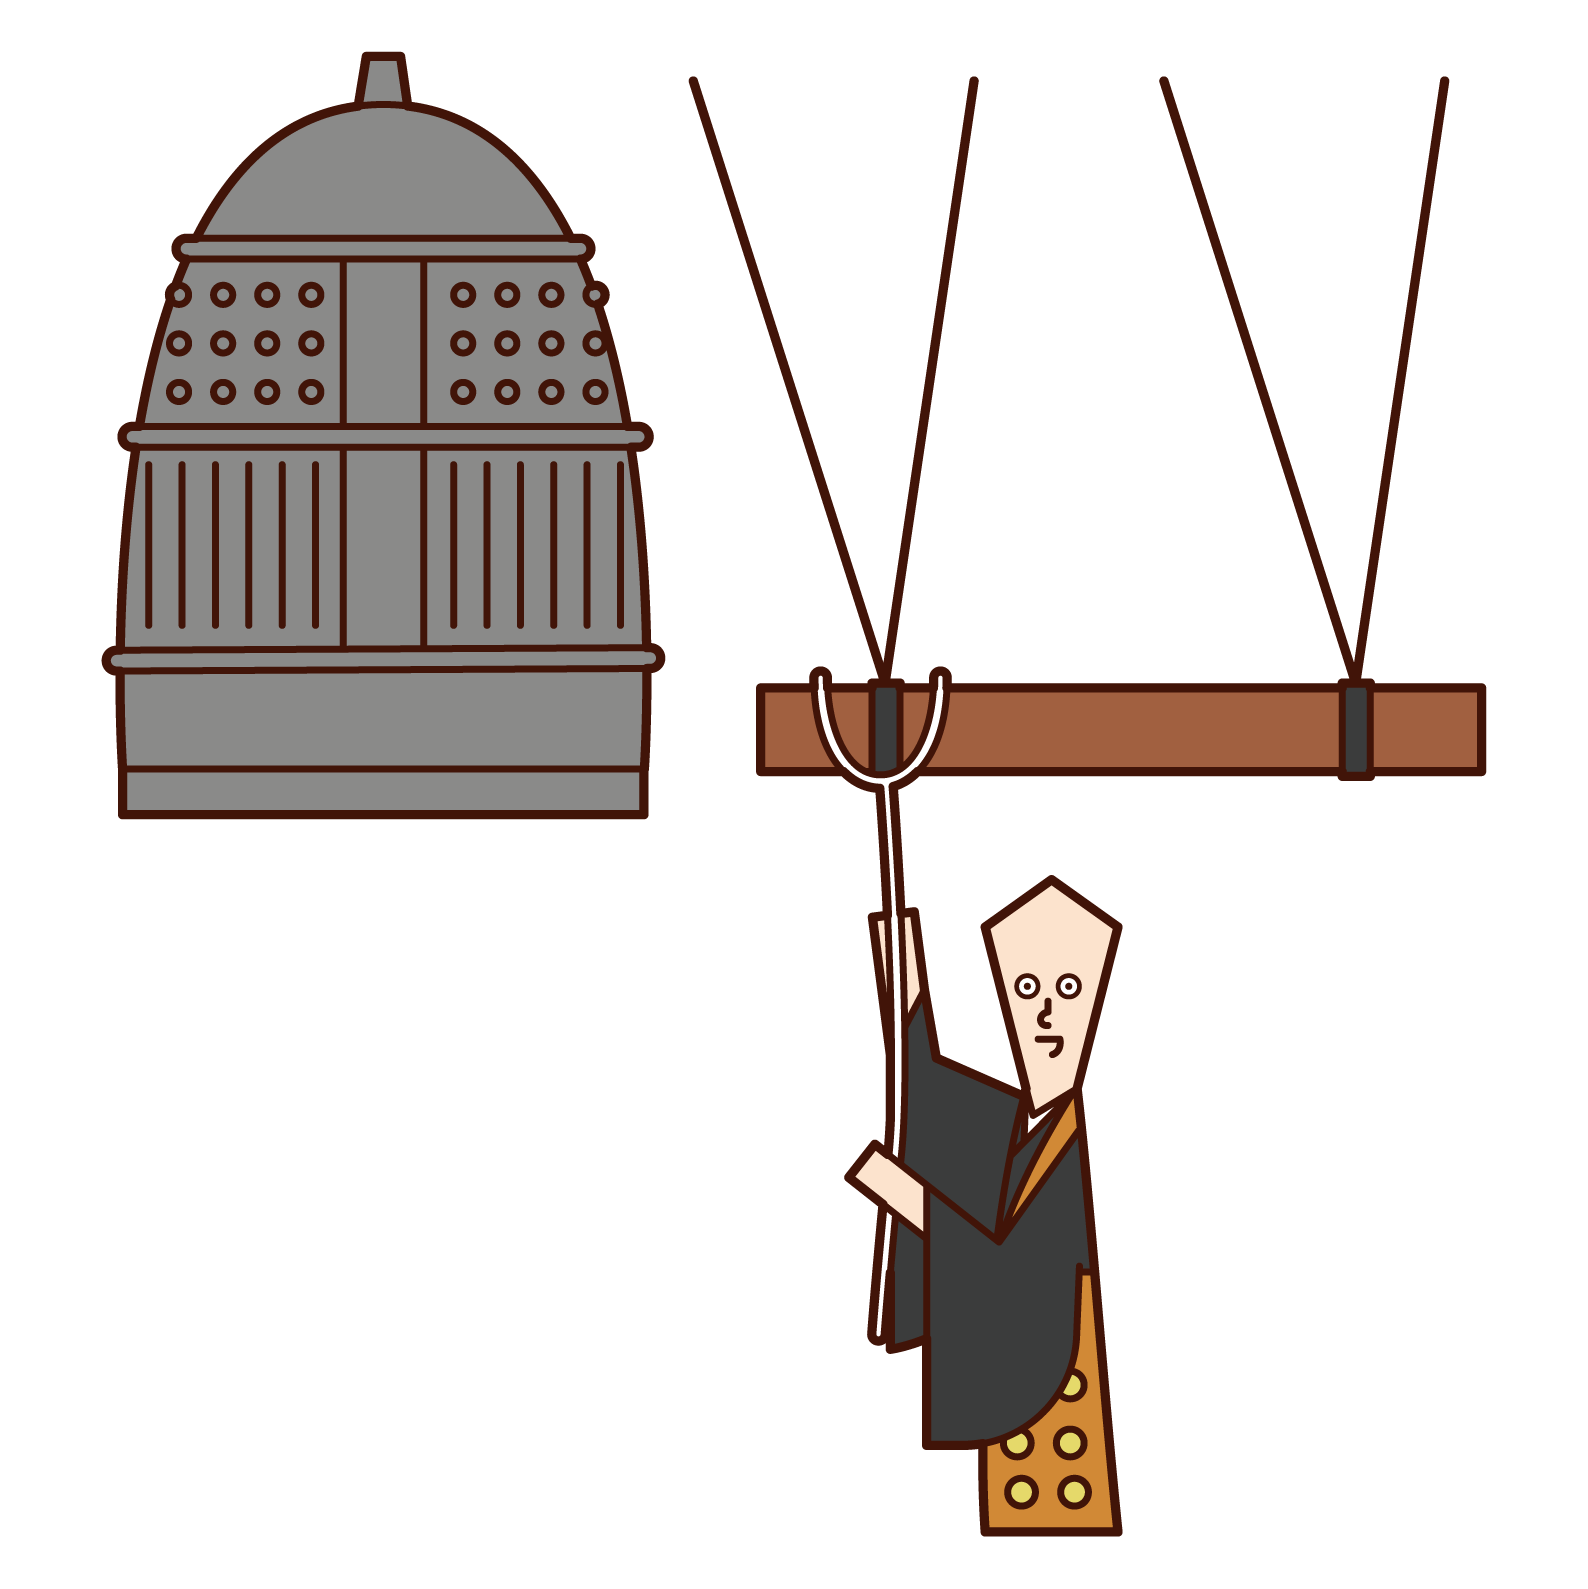 僧侶敲響寺廟鐘聲的插圖